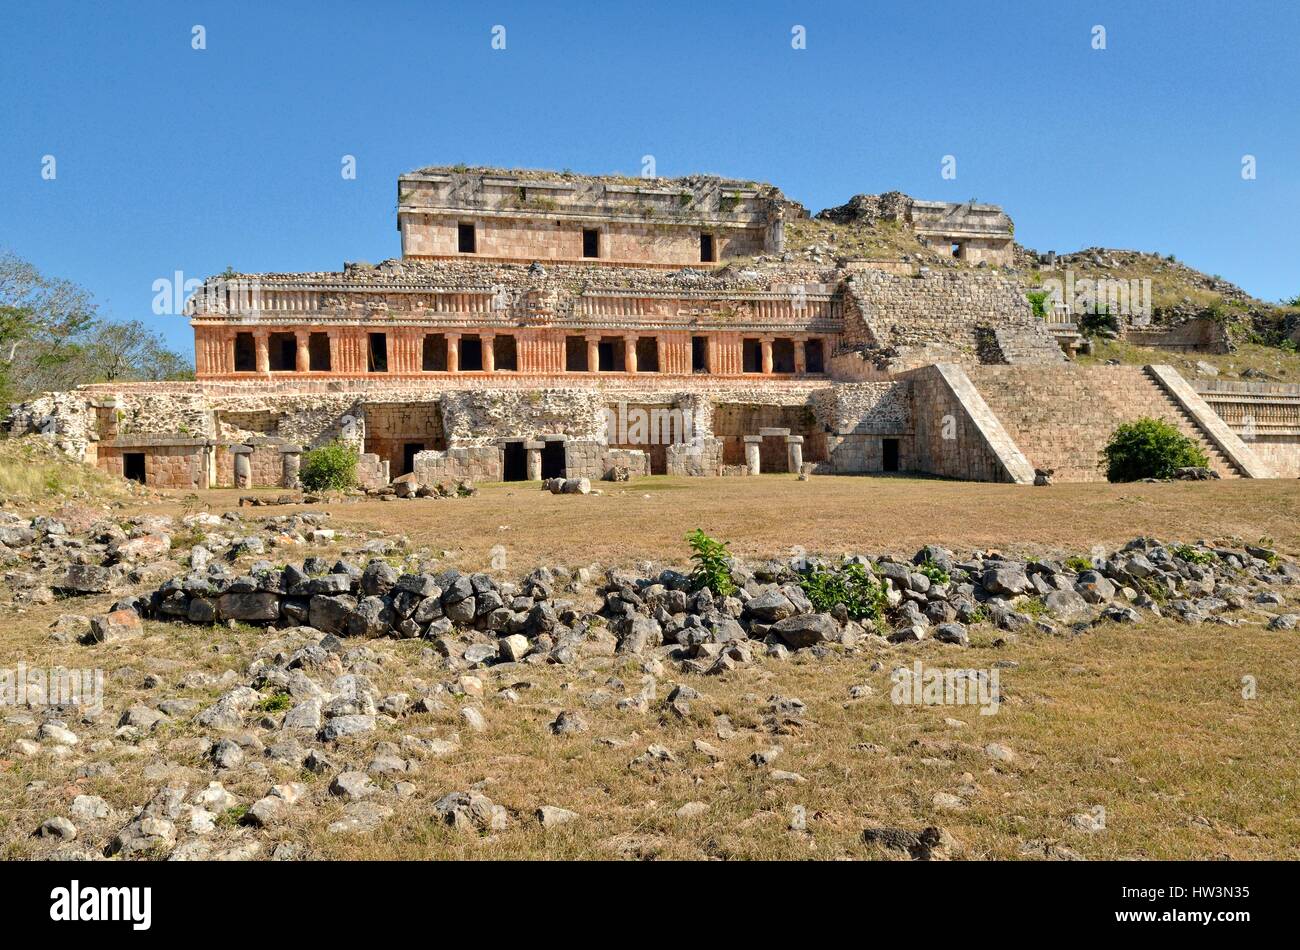 El Palacio, el Gran Palacio, la histórica ciudad Maya Sayil, Estado de Yucatán, México Foto de stock